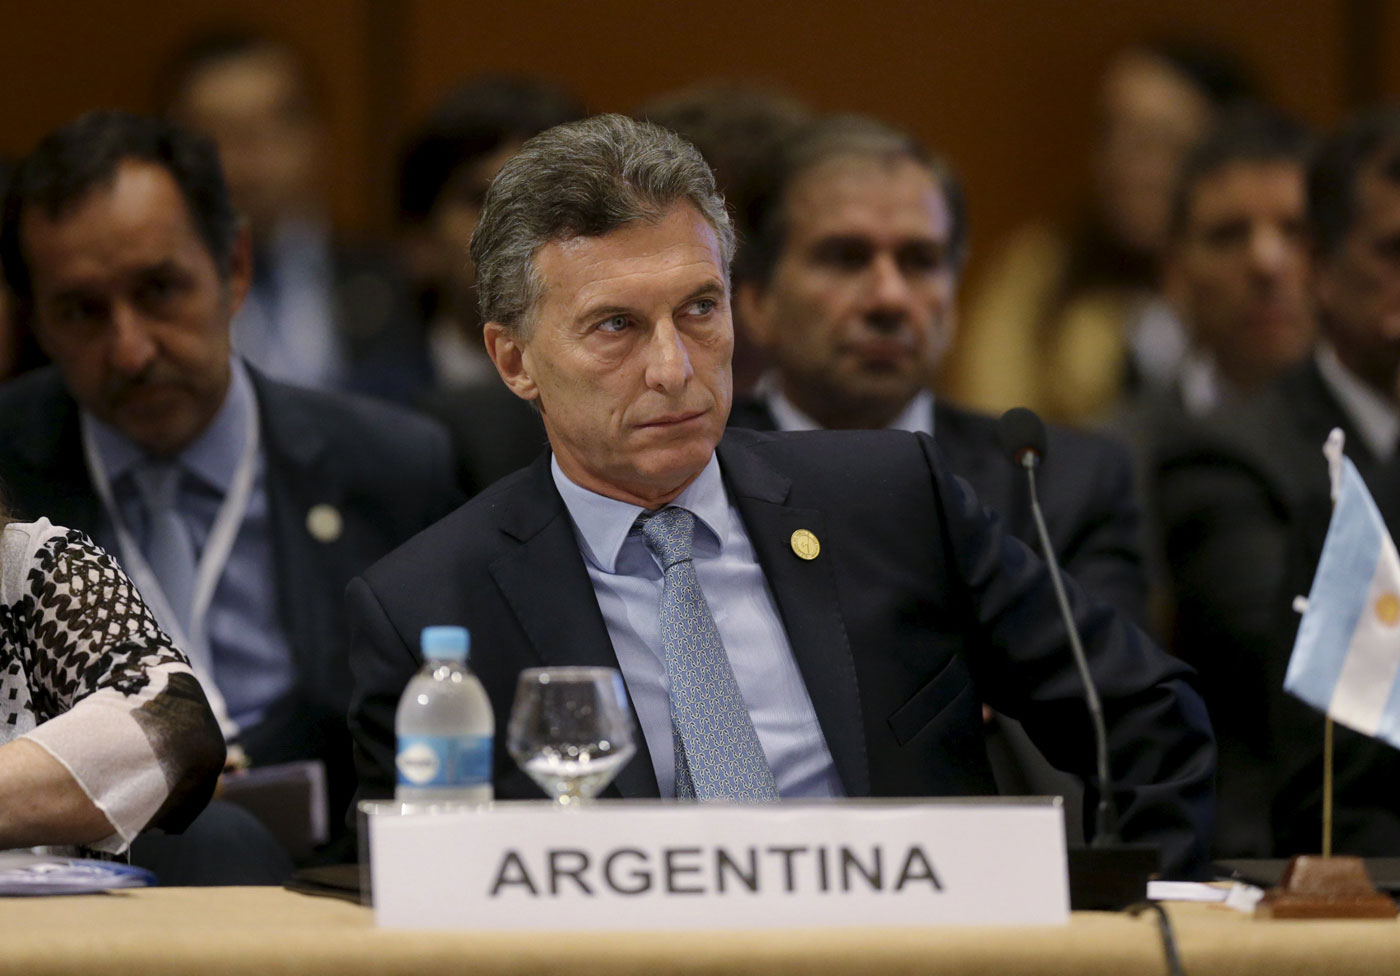 Hospitalizan al presidente argentino por arritmia cardíaca